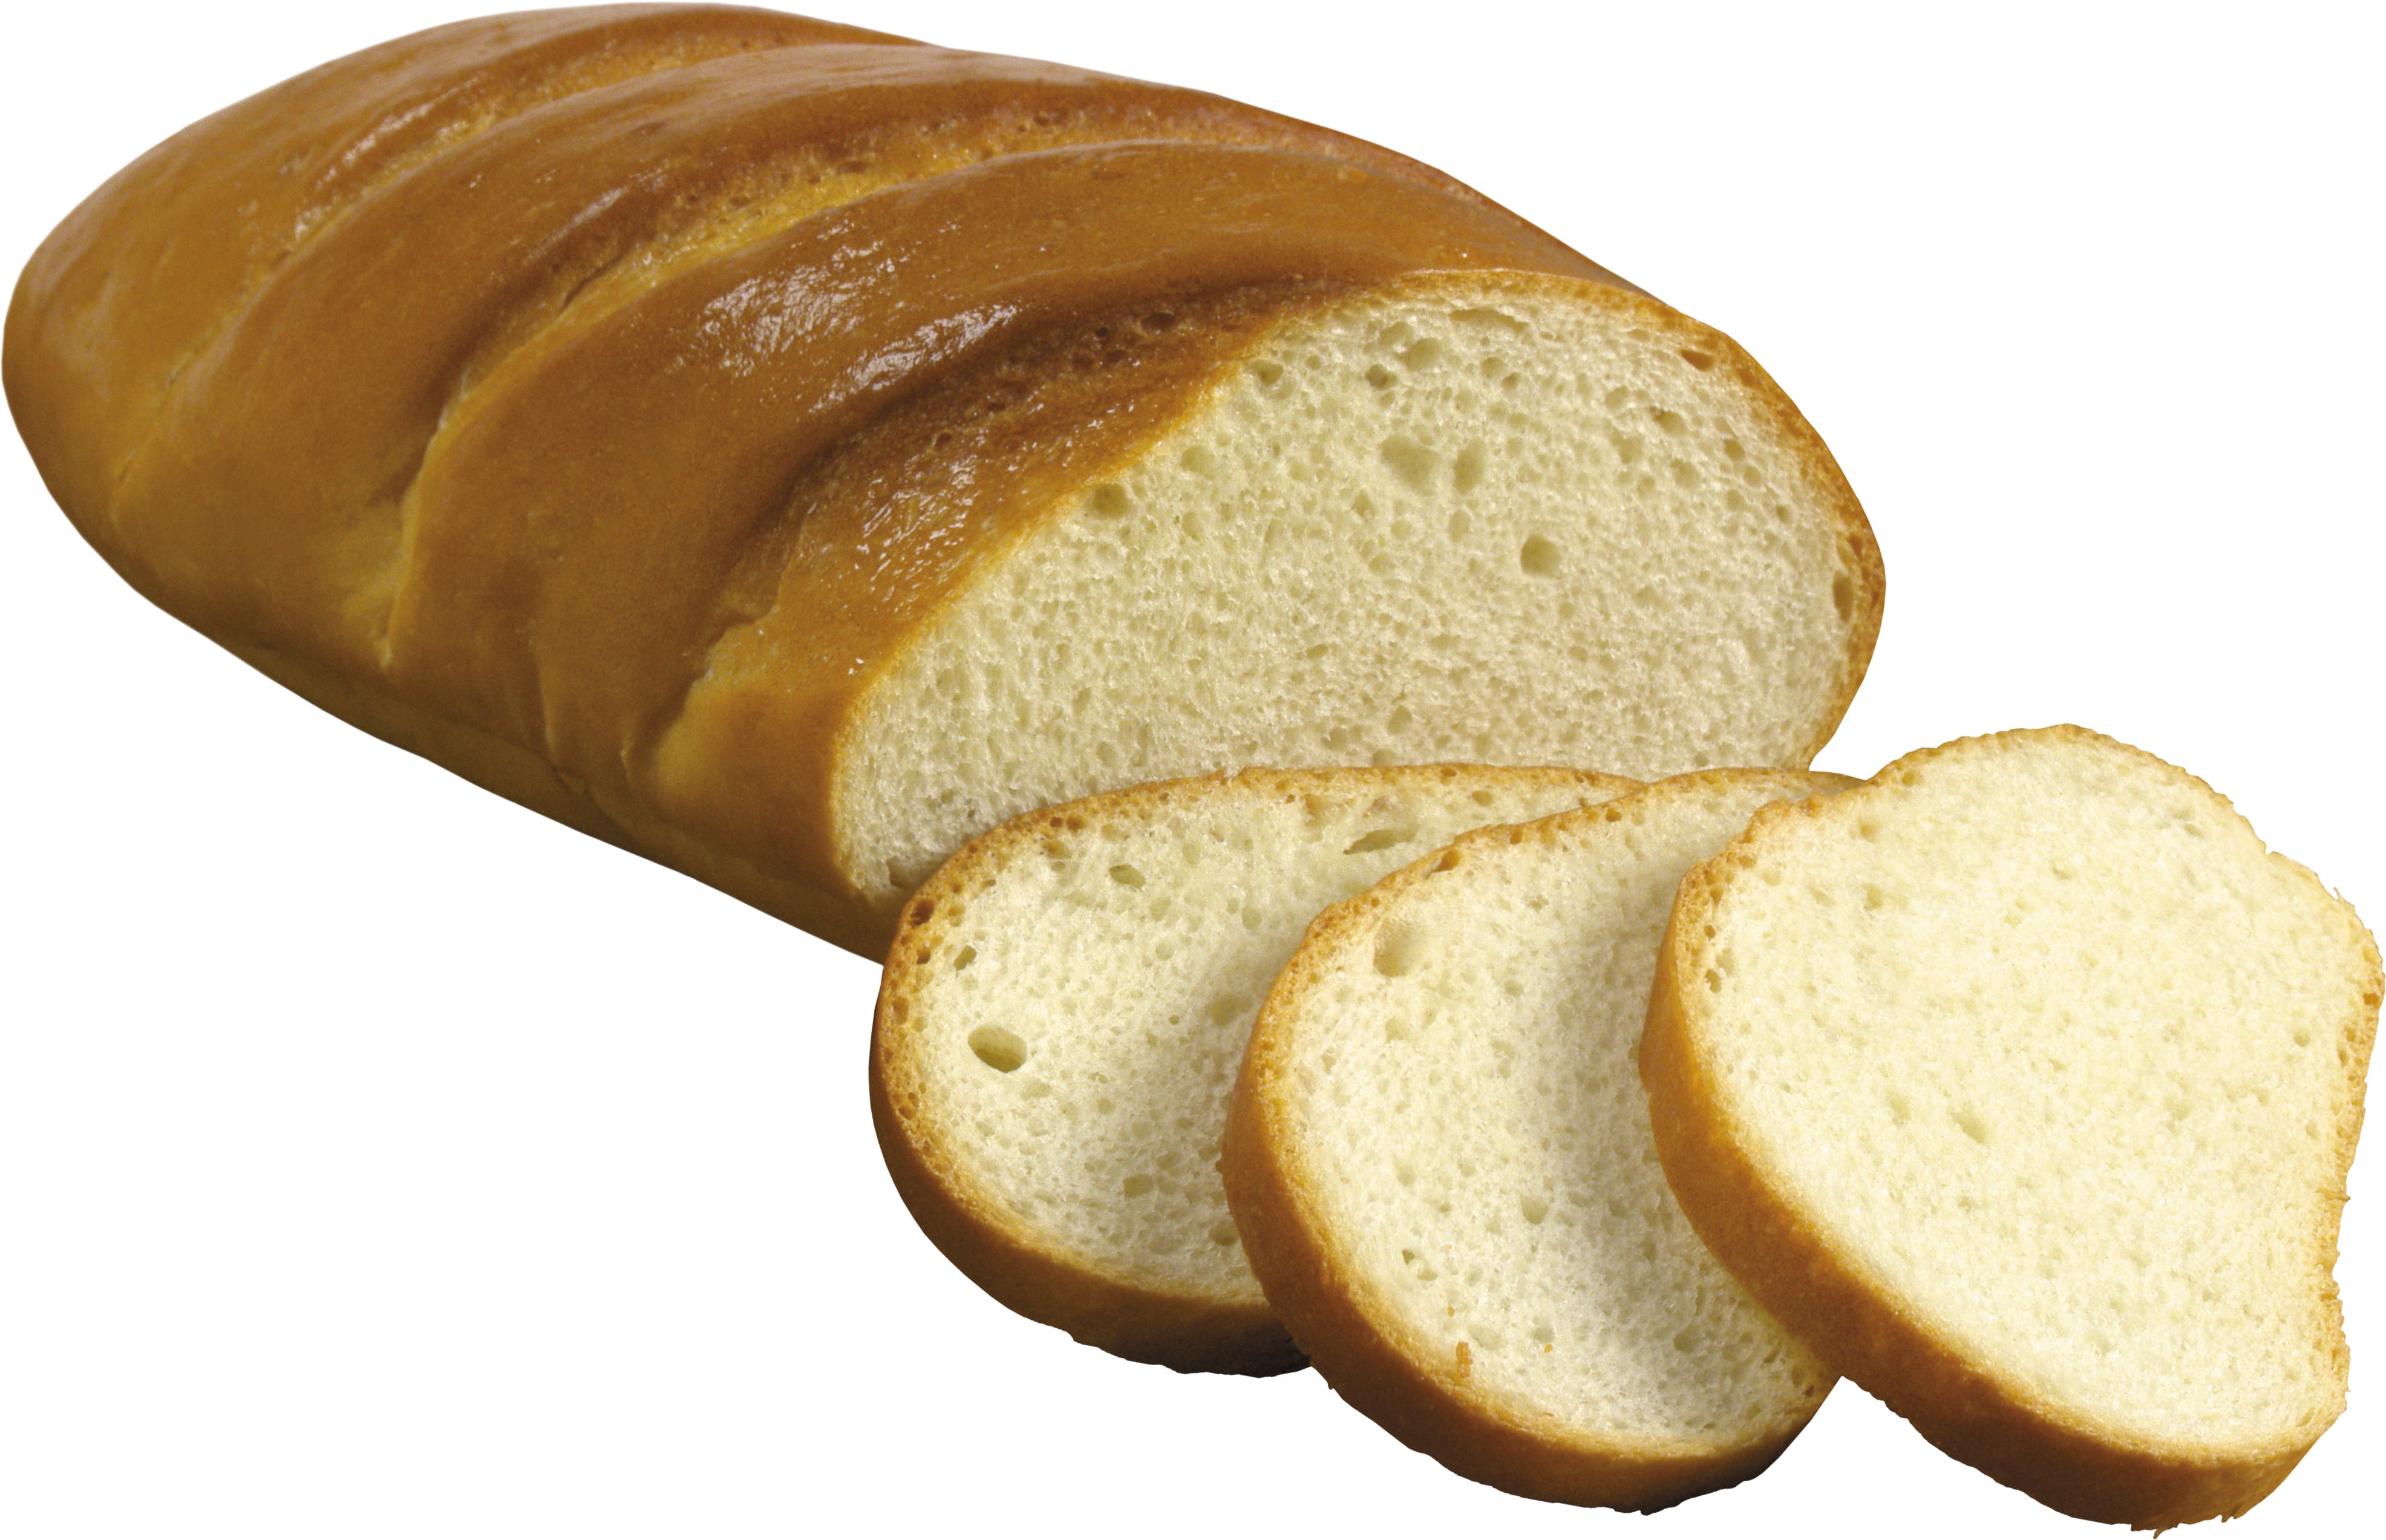 Bread Image Download Bun Picture Transparent Image Clipart